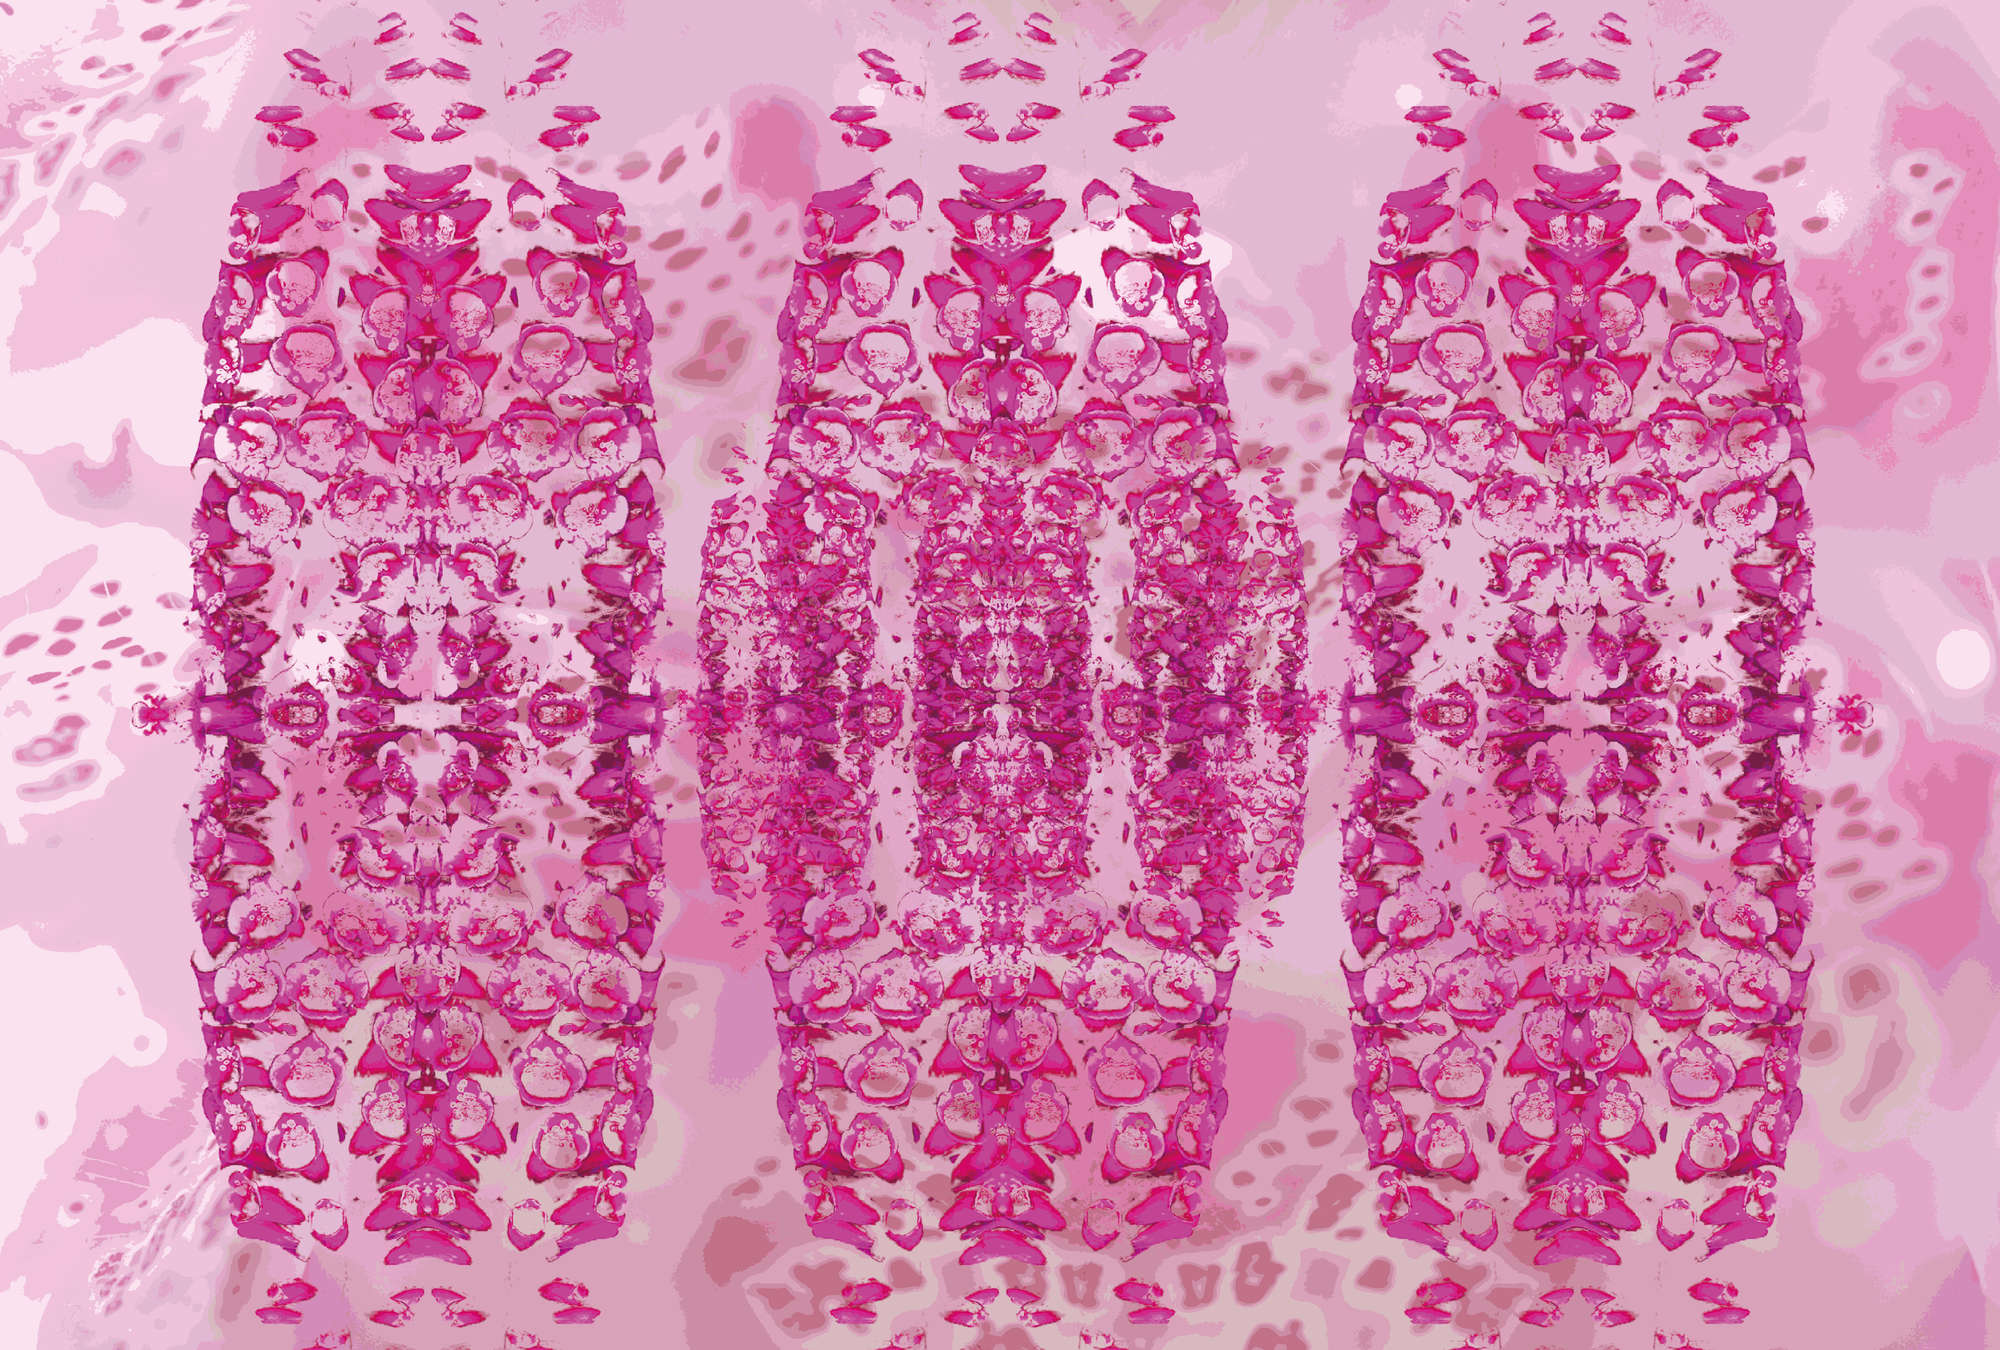             Muurschildering Roze Ontwerp met abstract patroon
        